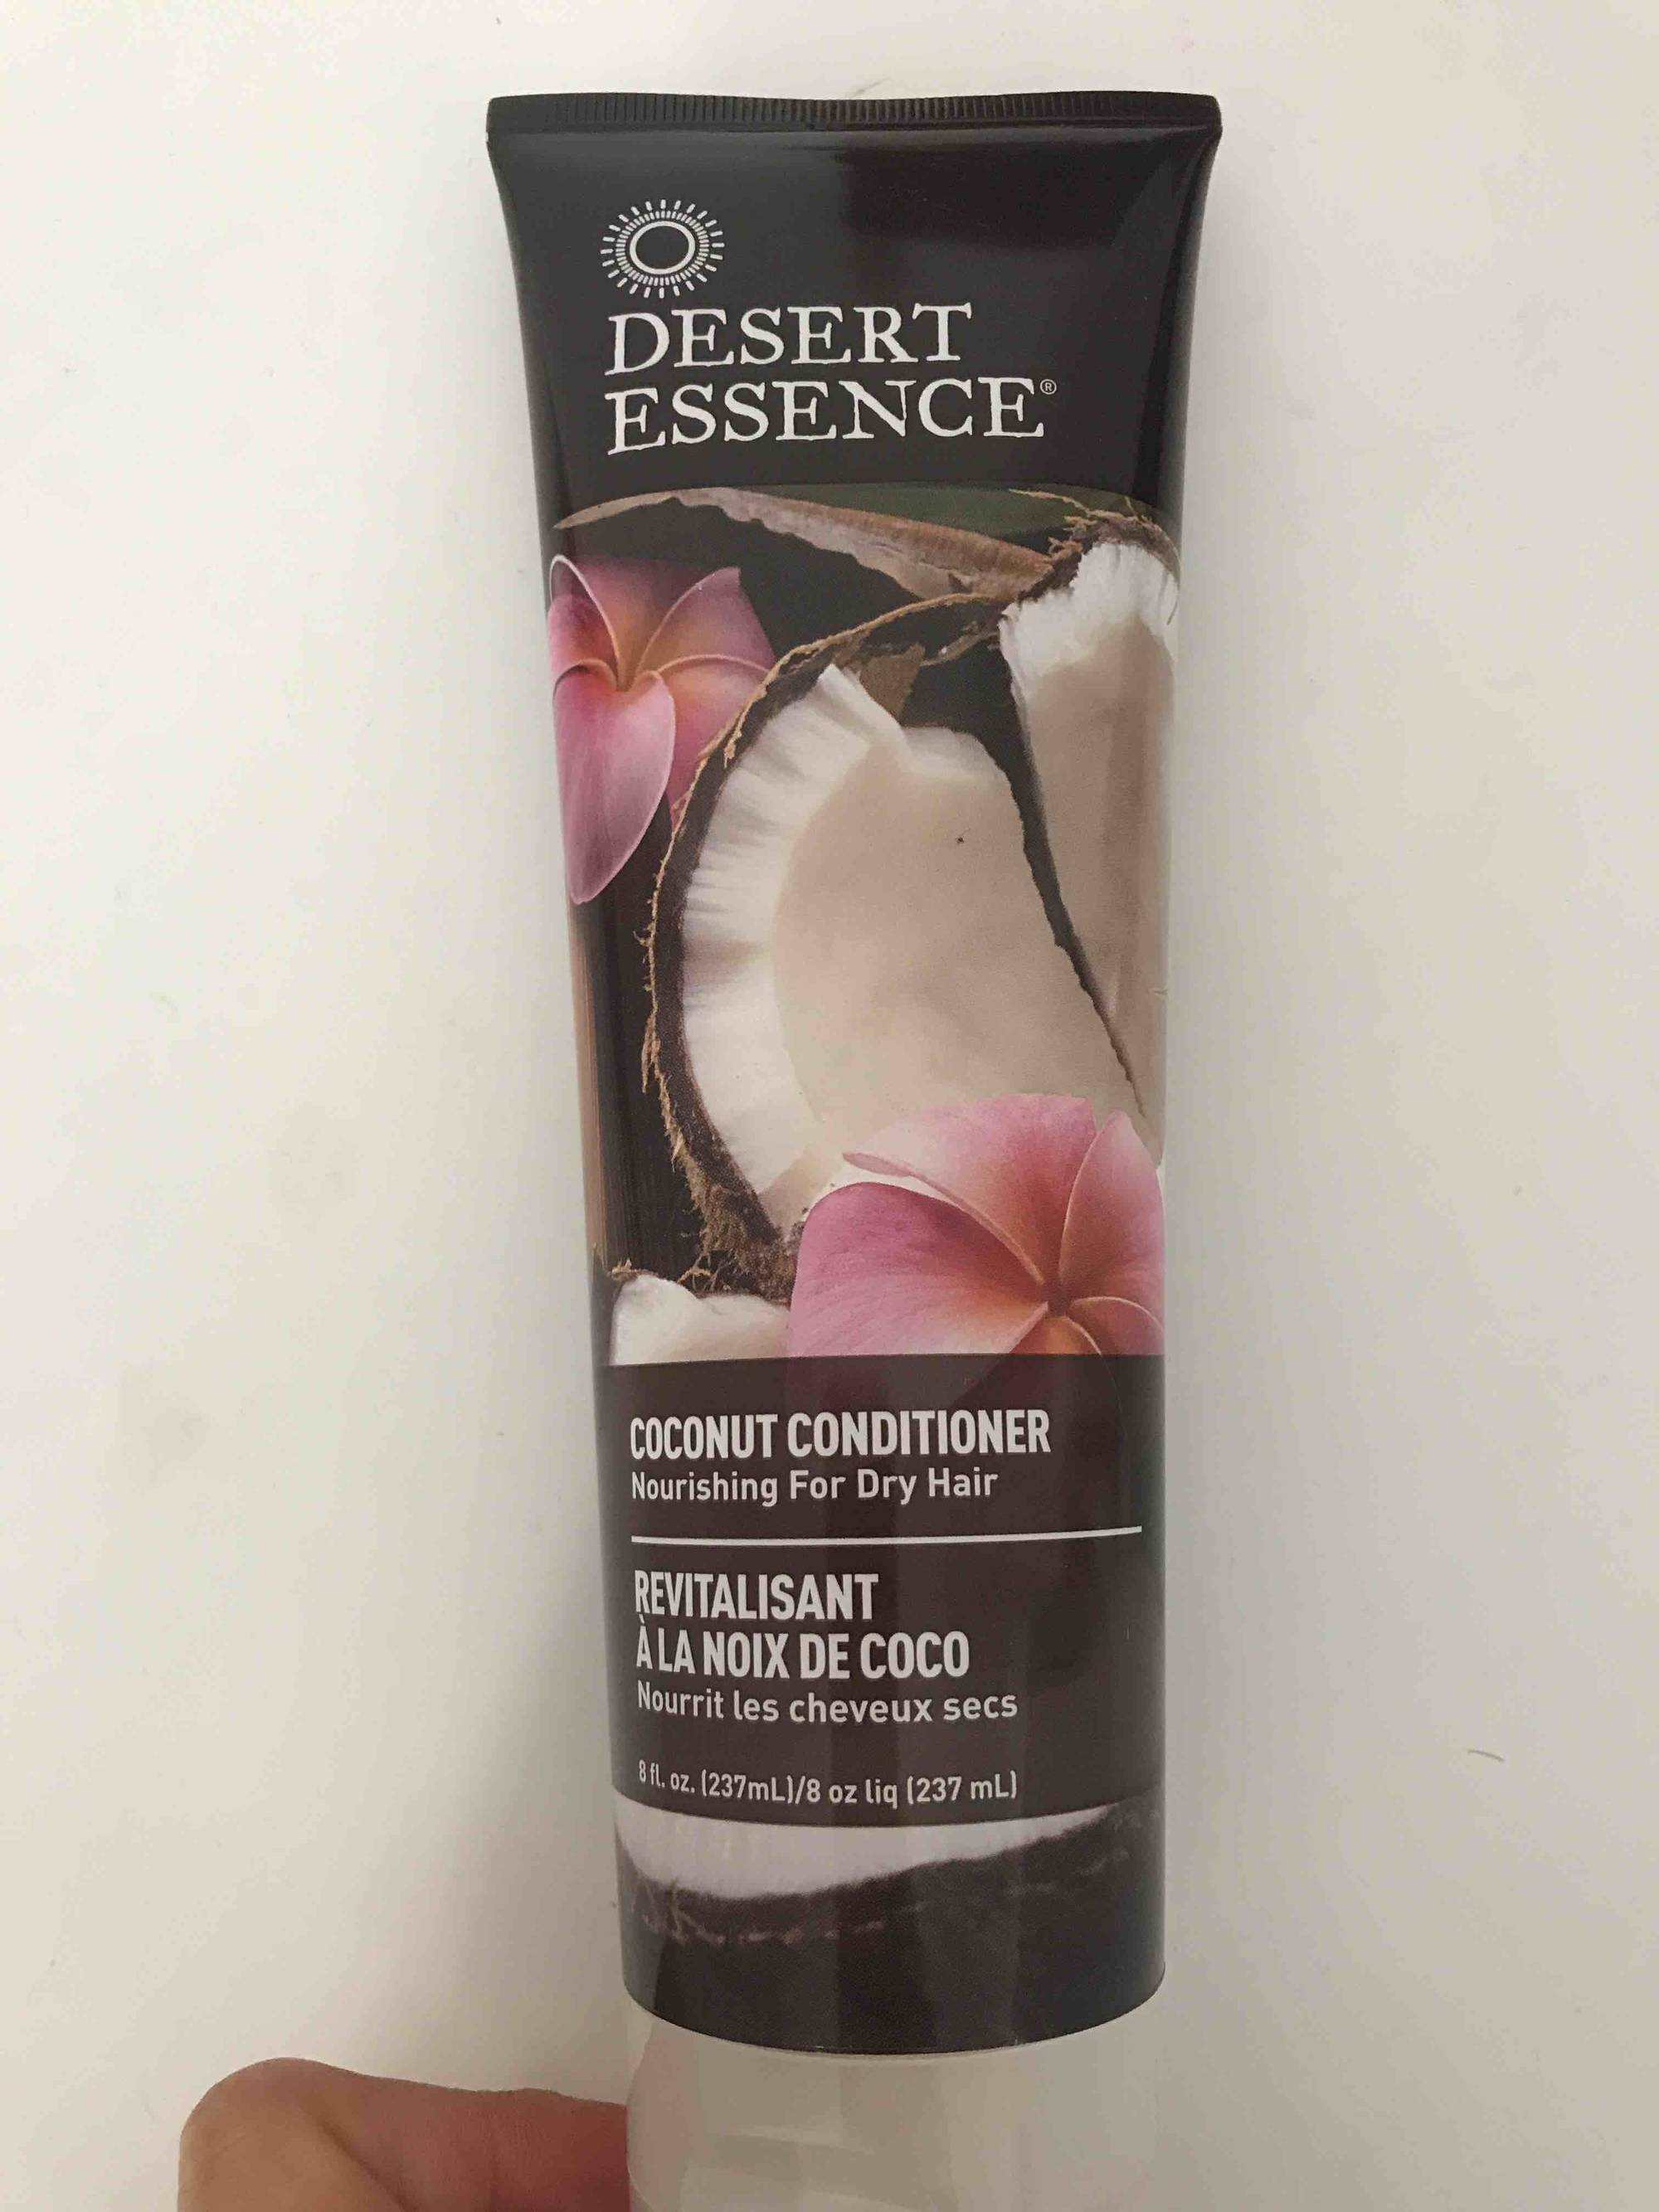 DESERT ESSENCE - Revitalisant à la noix de coco